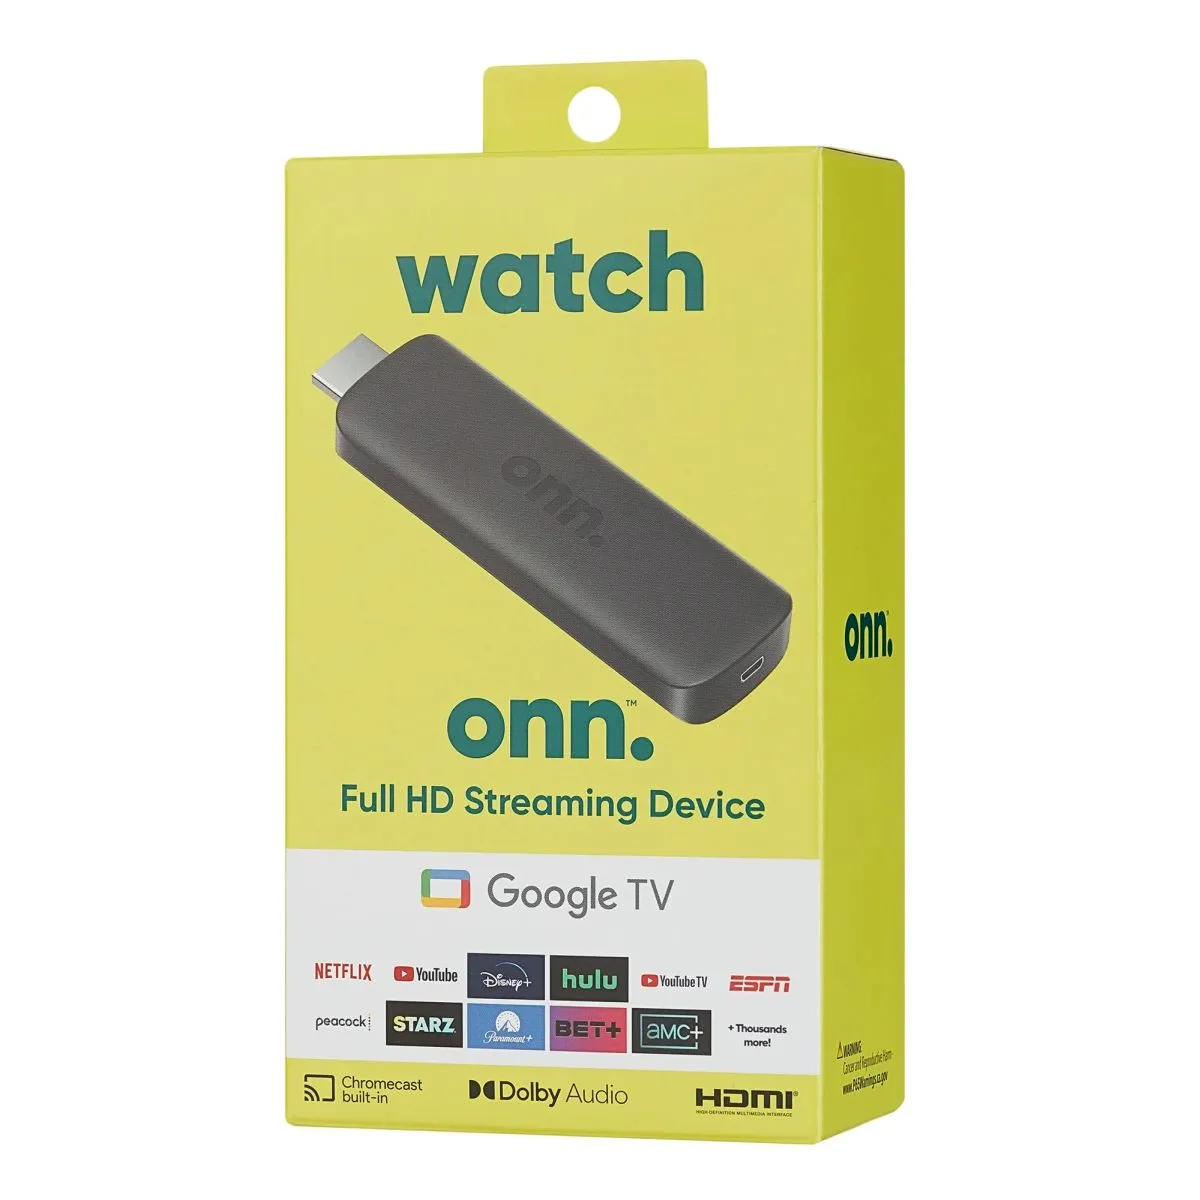 Novo Google TV Stick do Walmart custa apenas US$ 15